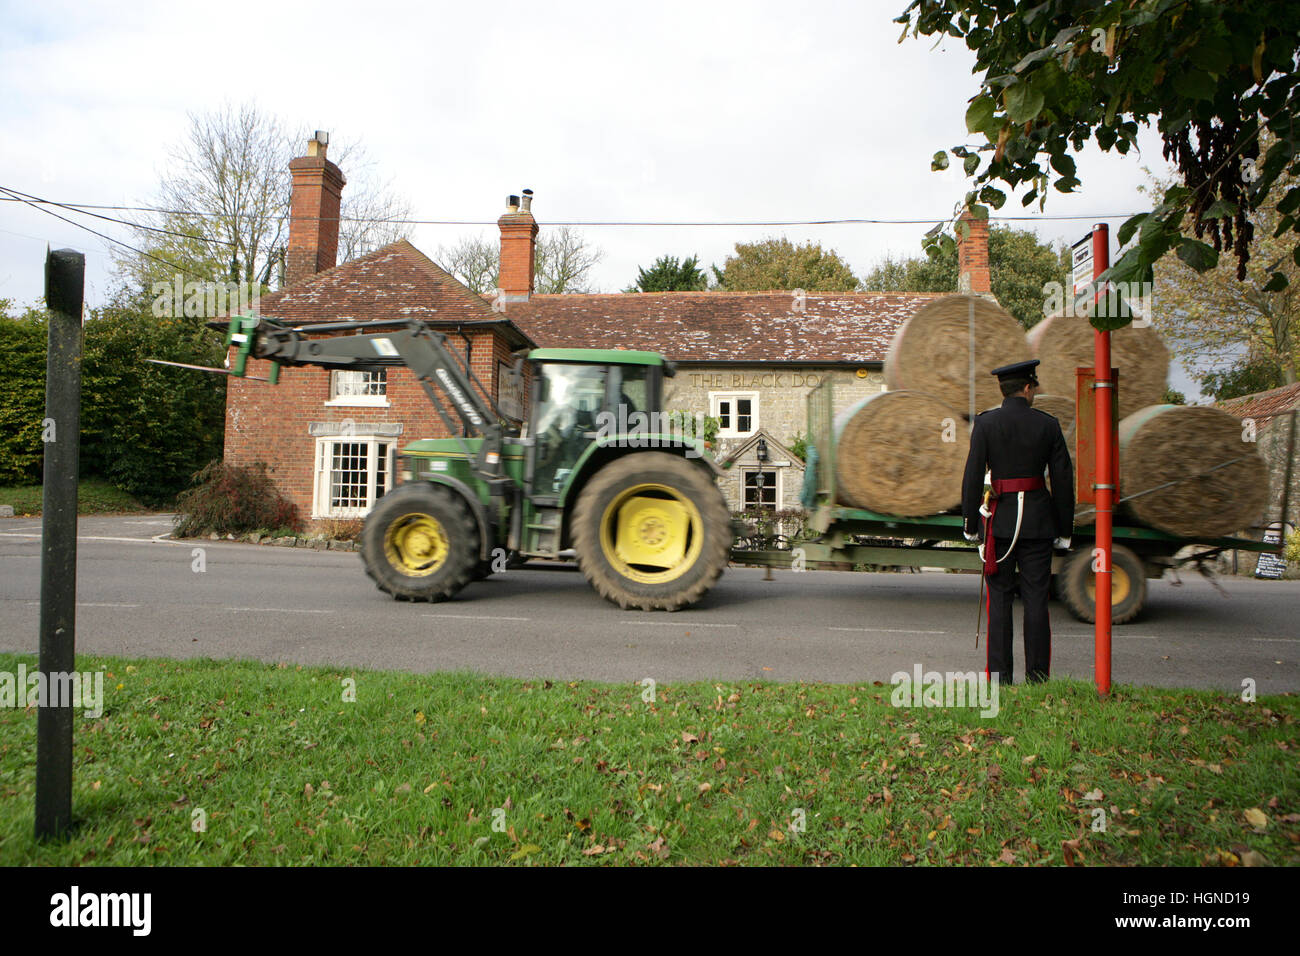 Un homme militaire attend patiemment pour un tracteur pour passer à côté d'un arrêt de bus du village en Angleterre Banque D'Images